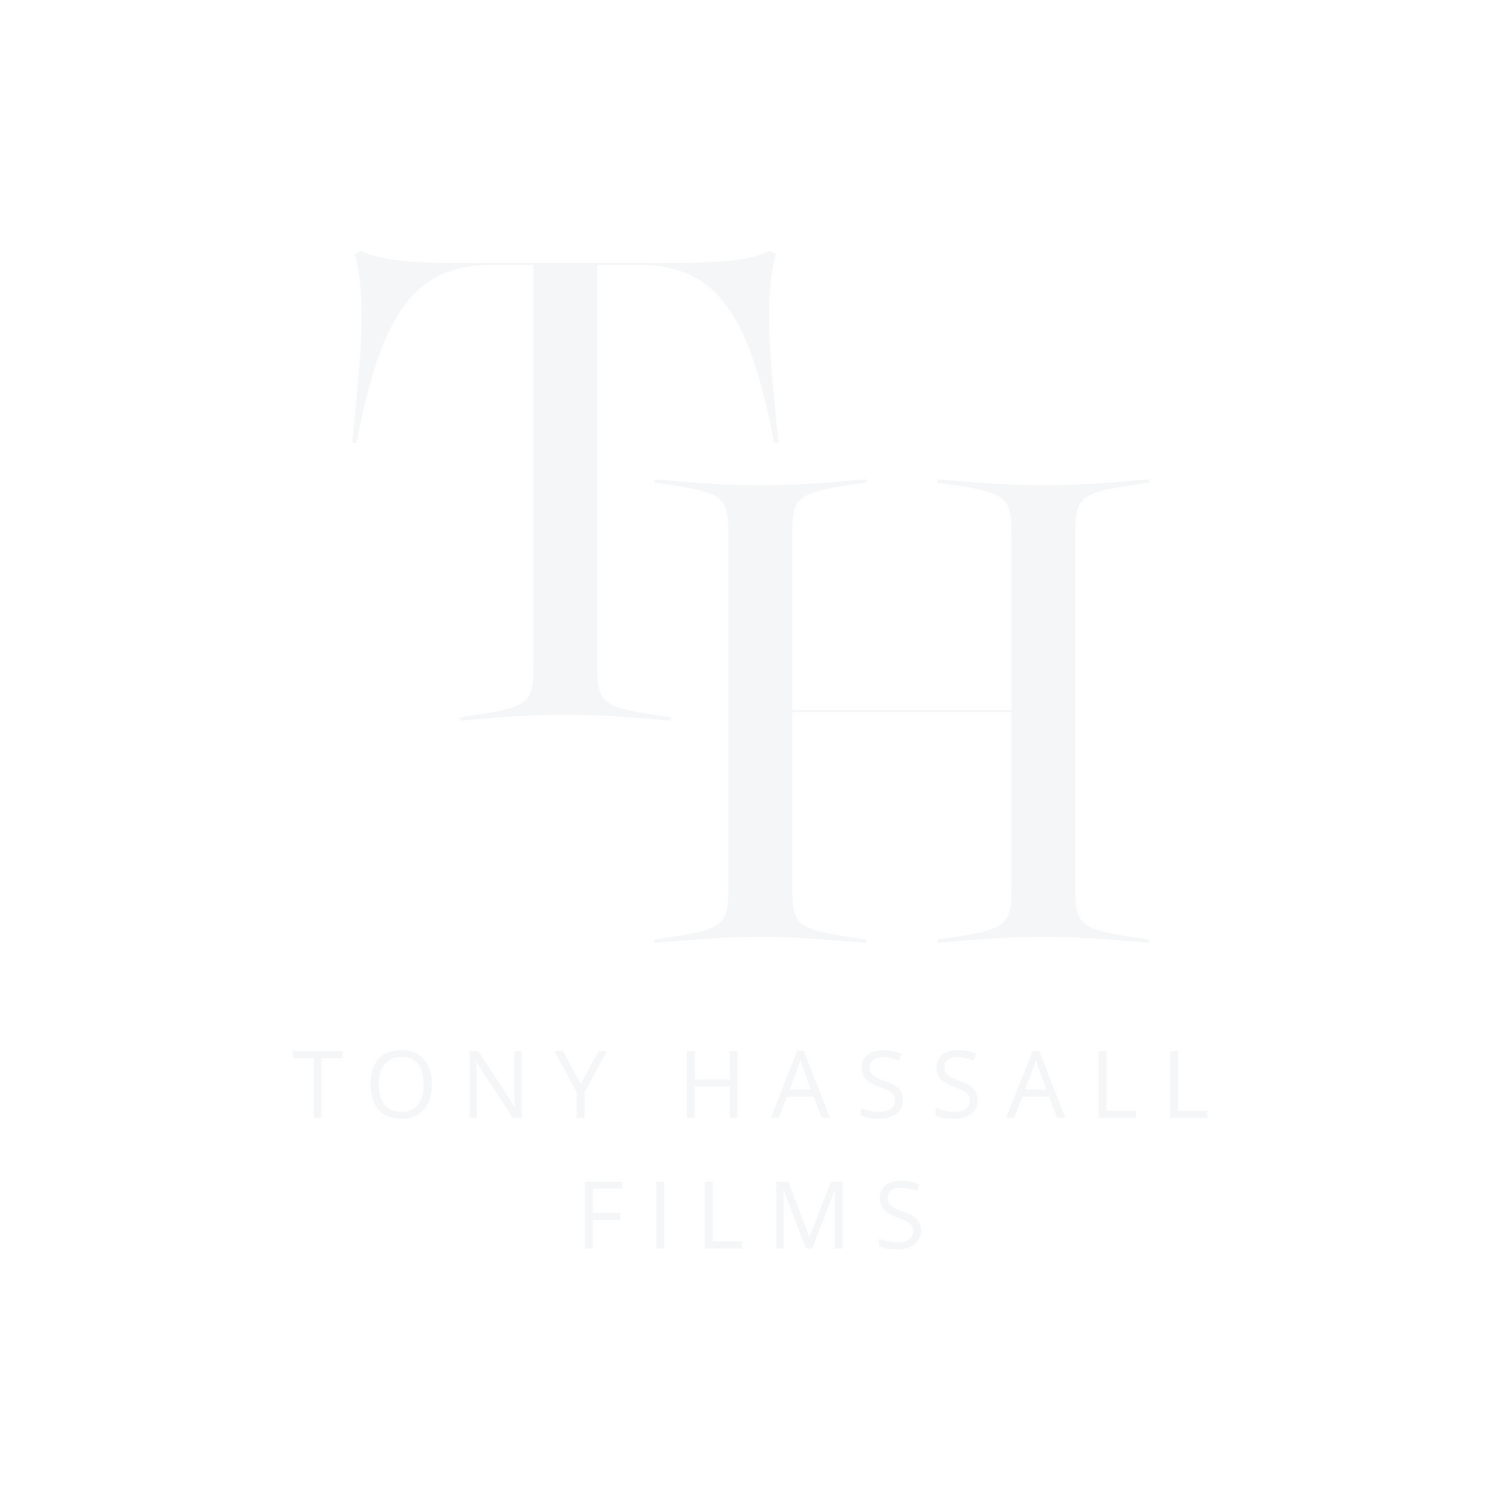 Tony Hassall Films